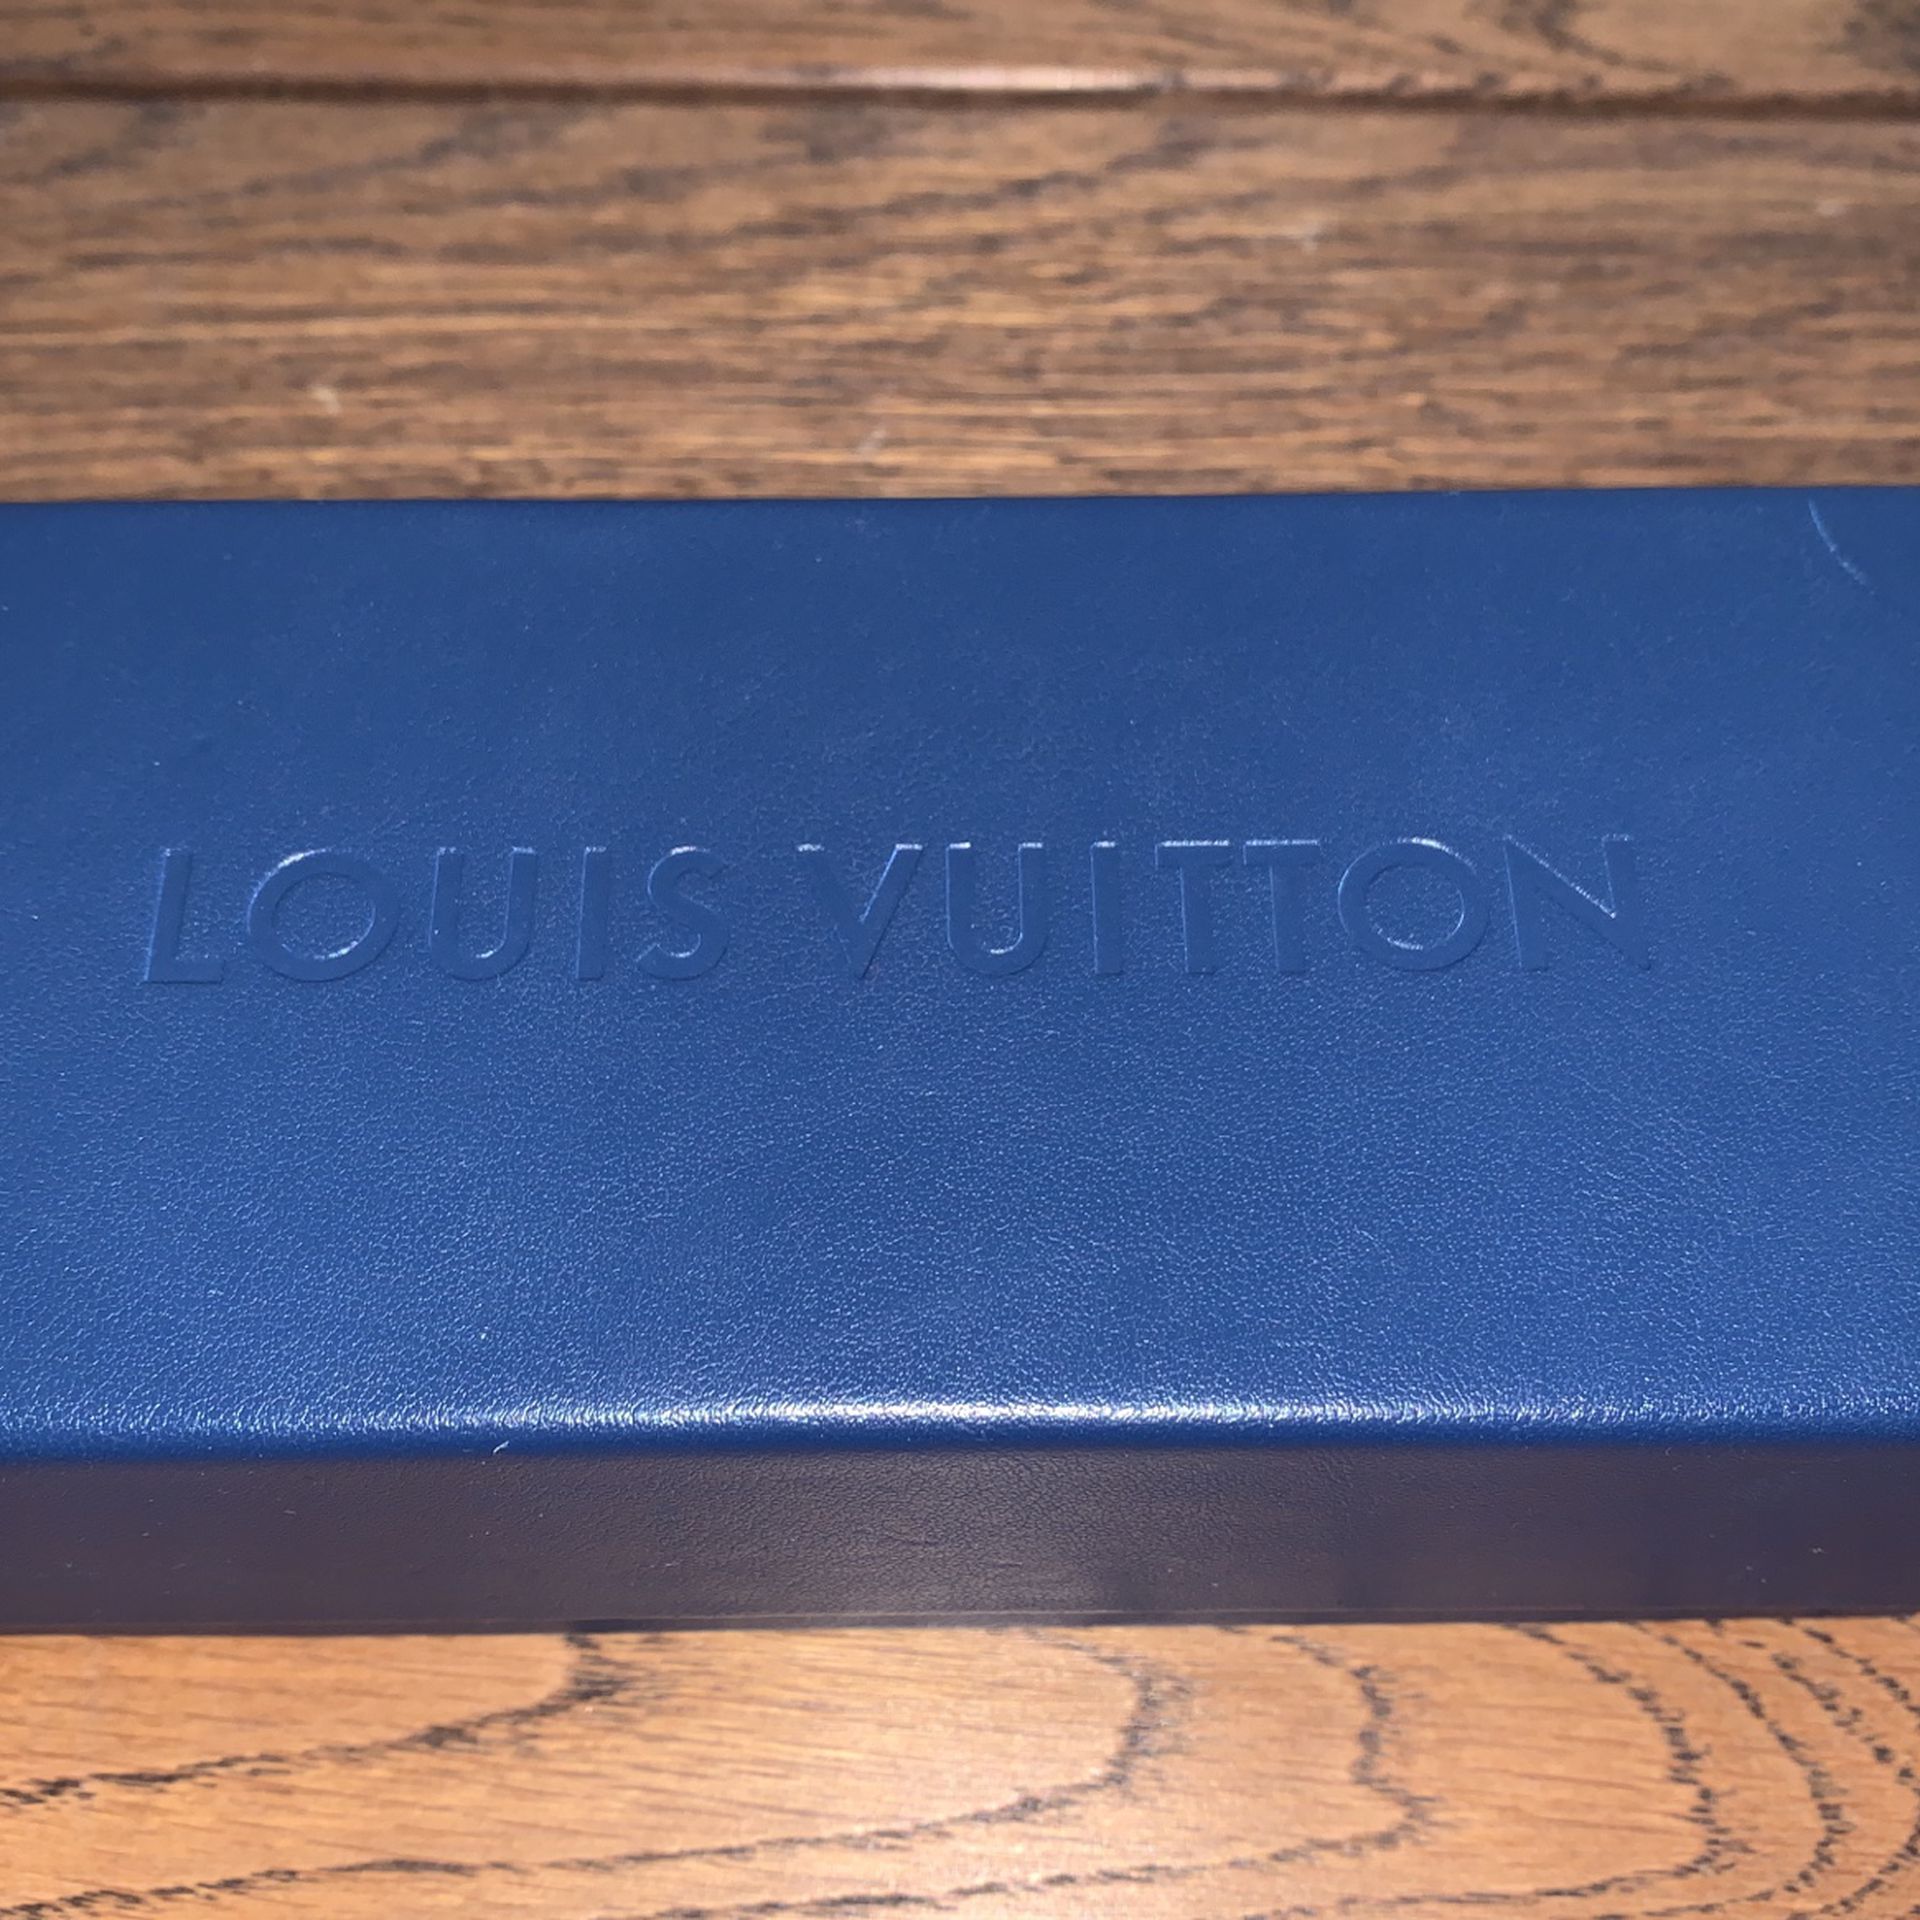 Louis Vuitton Black La Grande Bellezza Sunglasses ○ Labellov